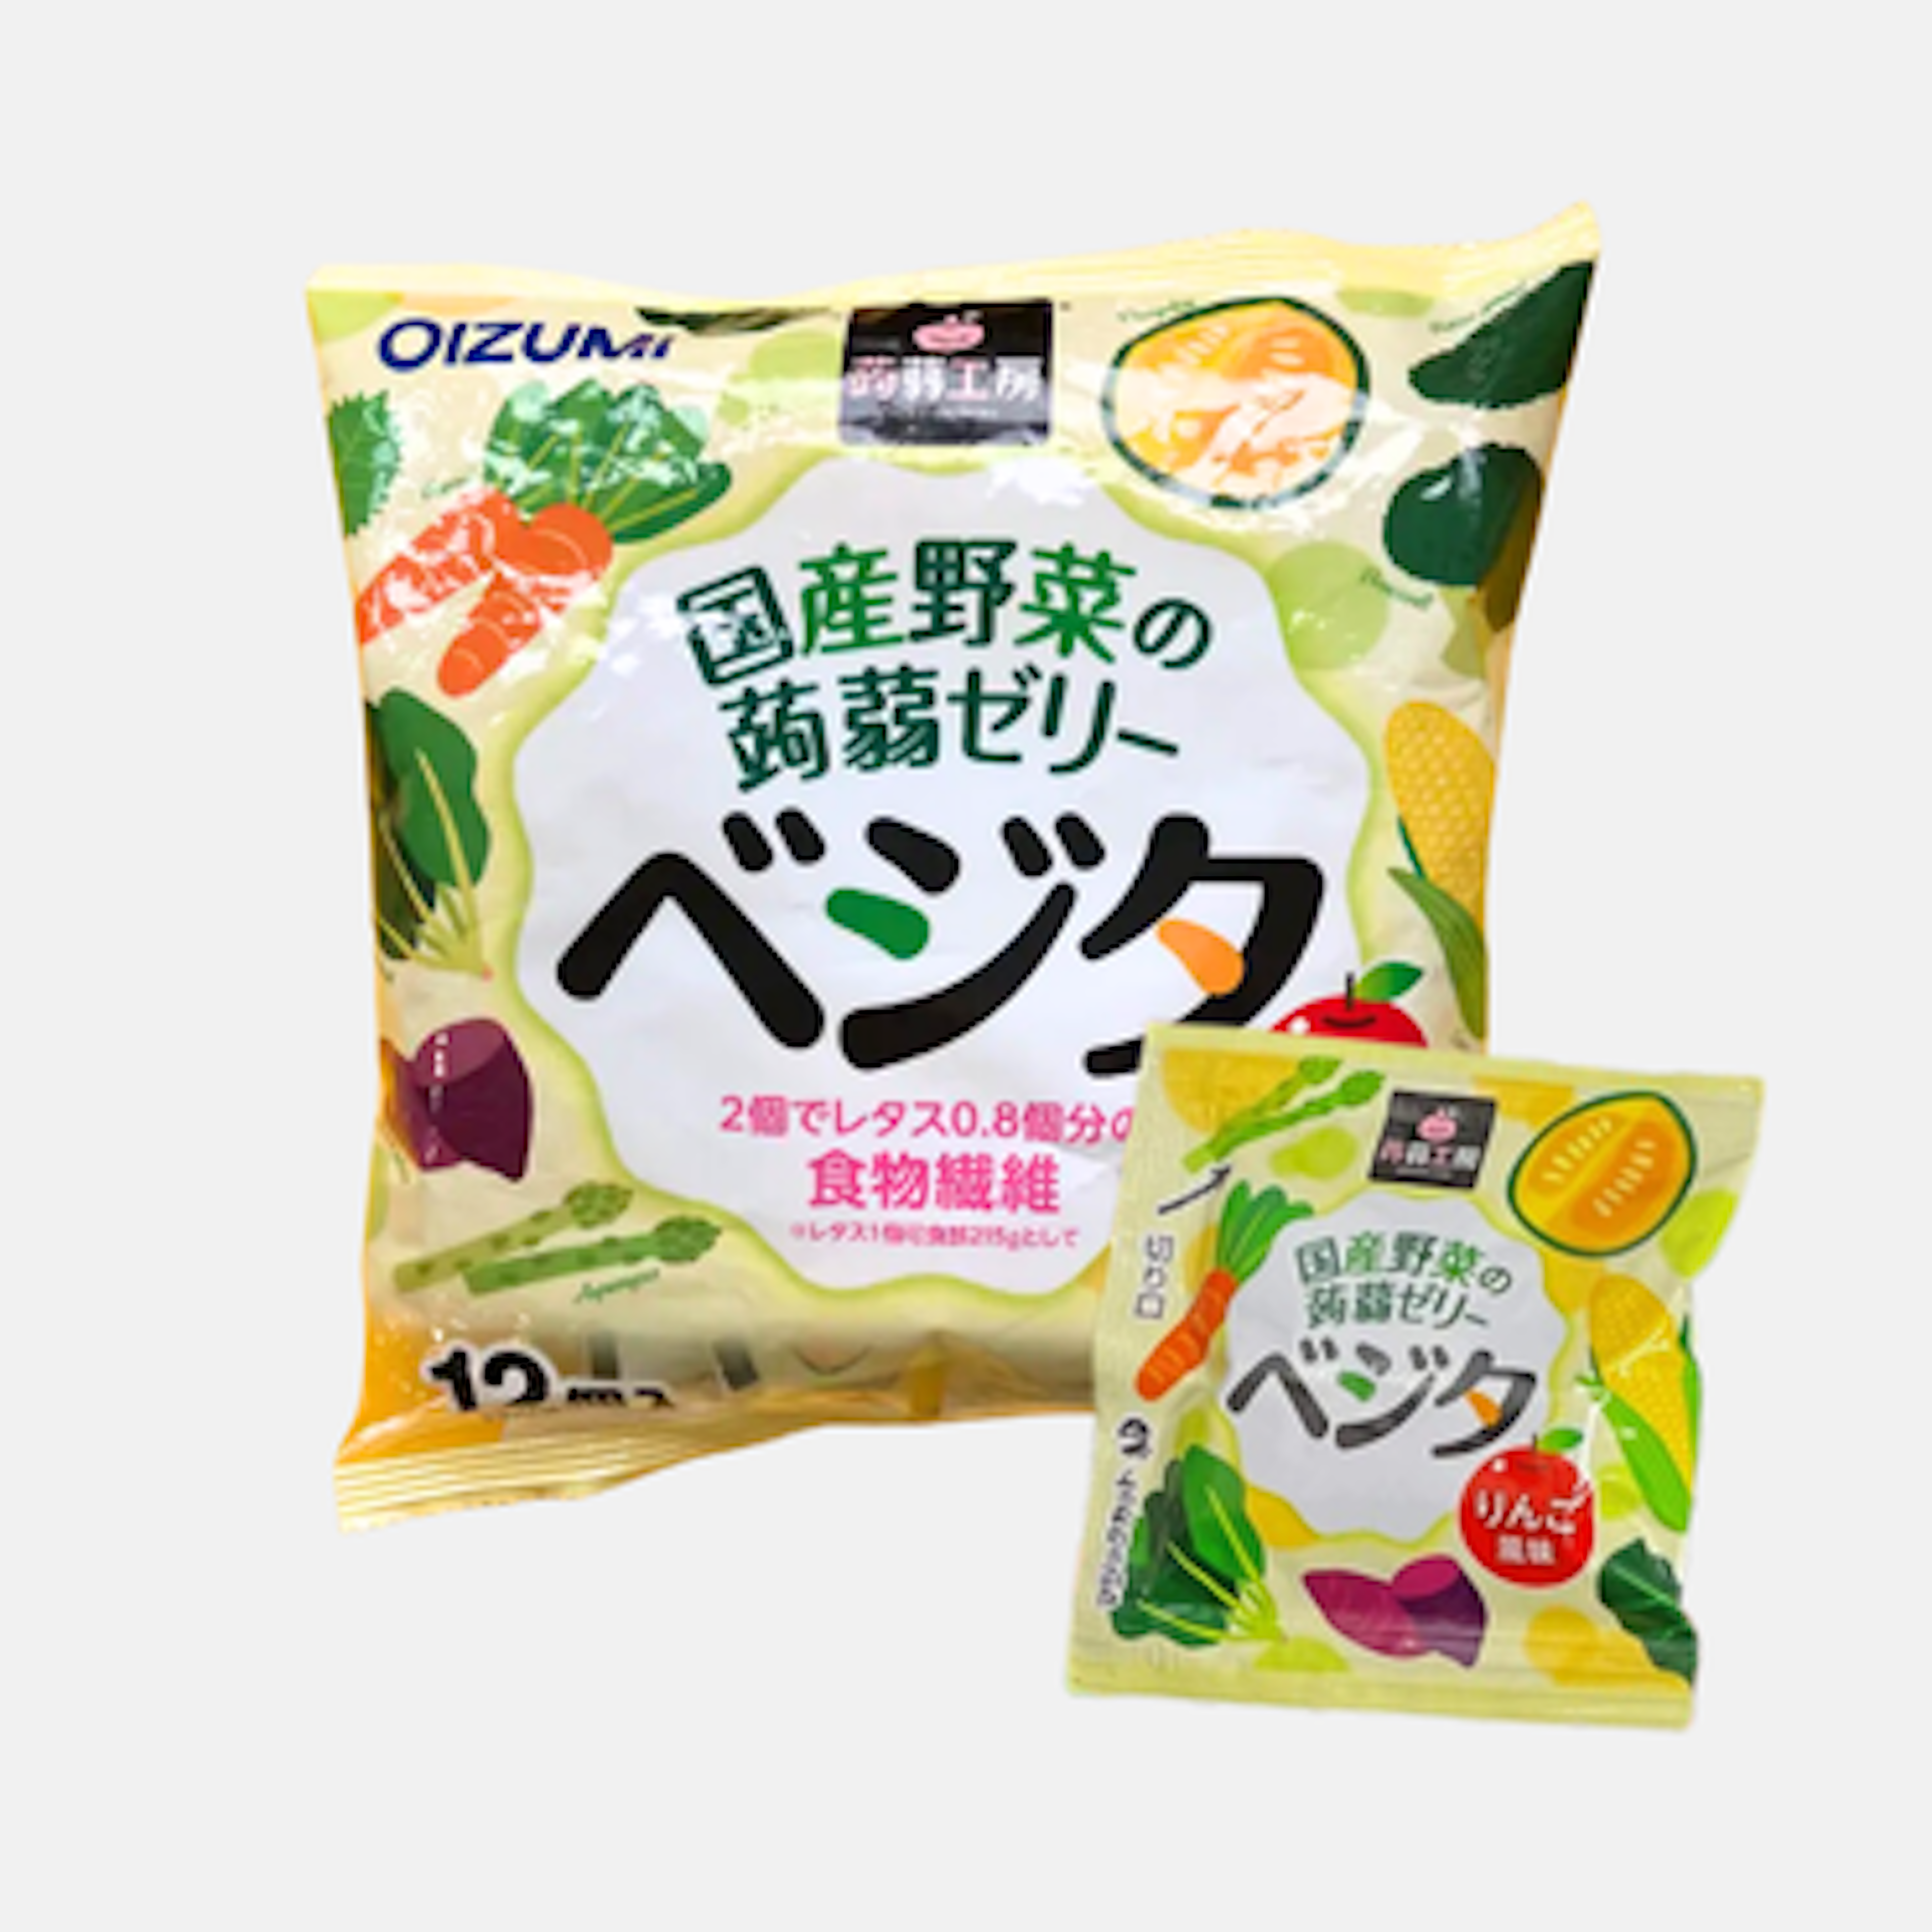 OIZUMI Konjak Jelly Gemüse - Gesunder Gemüse-Konjakt-Snack, 12er Pack